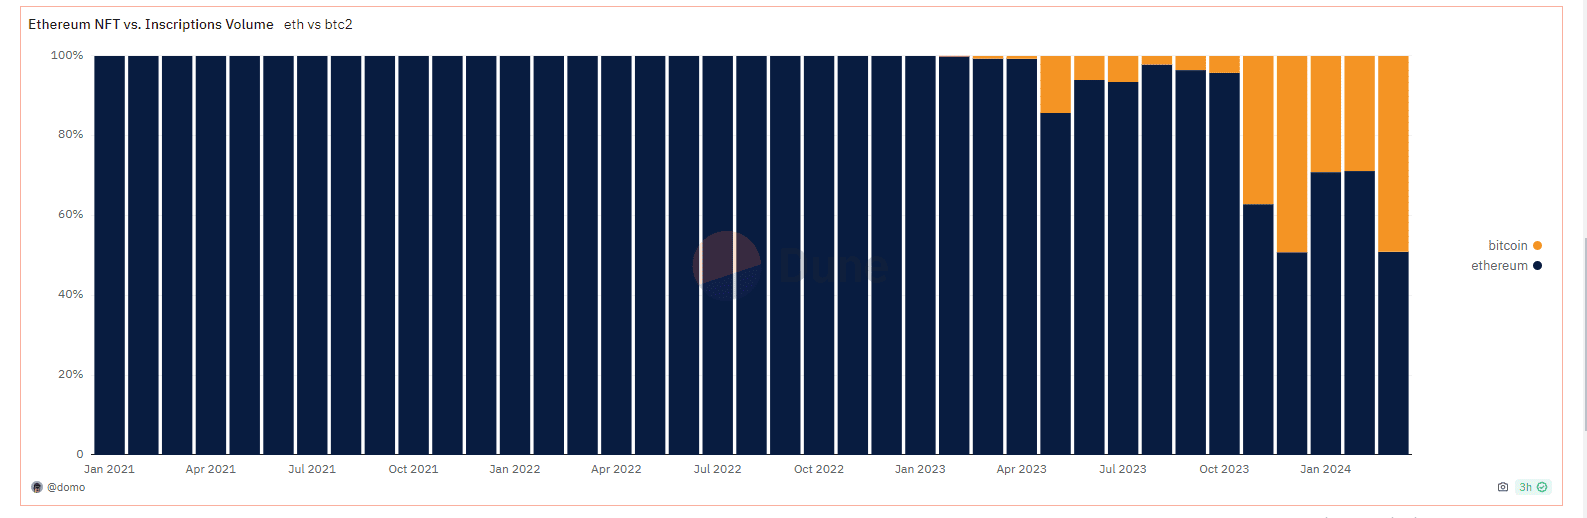 En una sorpresiva alza, el volumen de trading de los Ordinals ha alcanzado un nuevo pico el 3 de marzo, ascendiendo a los $51.14 millones.